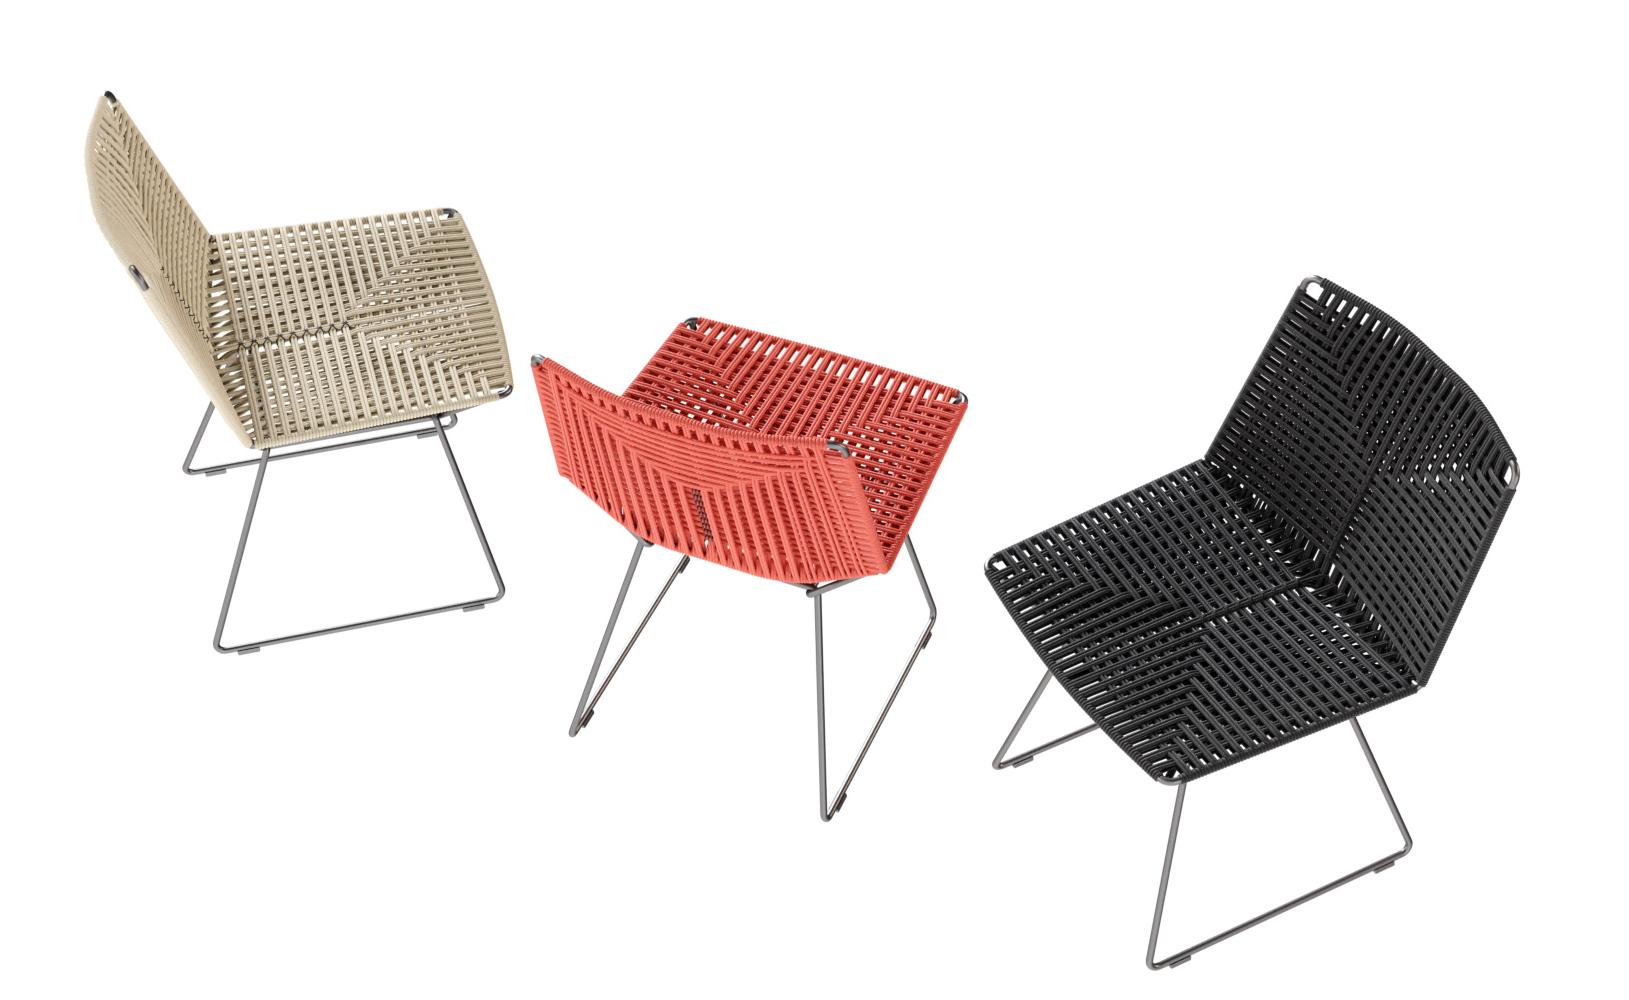 Neil Twist Versatile Chair for Indoor/Outdoor Use